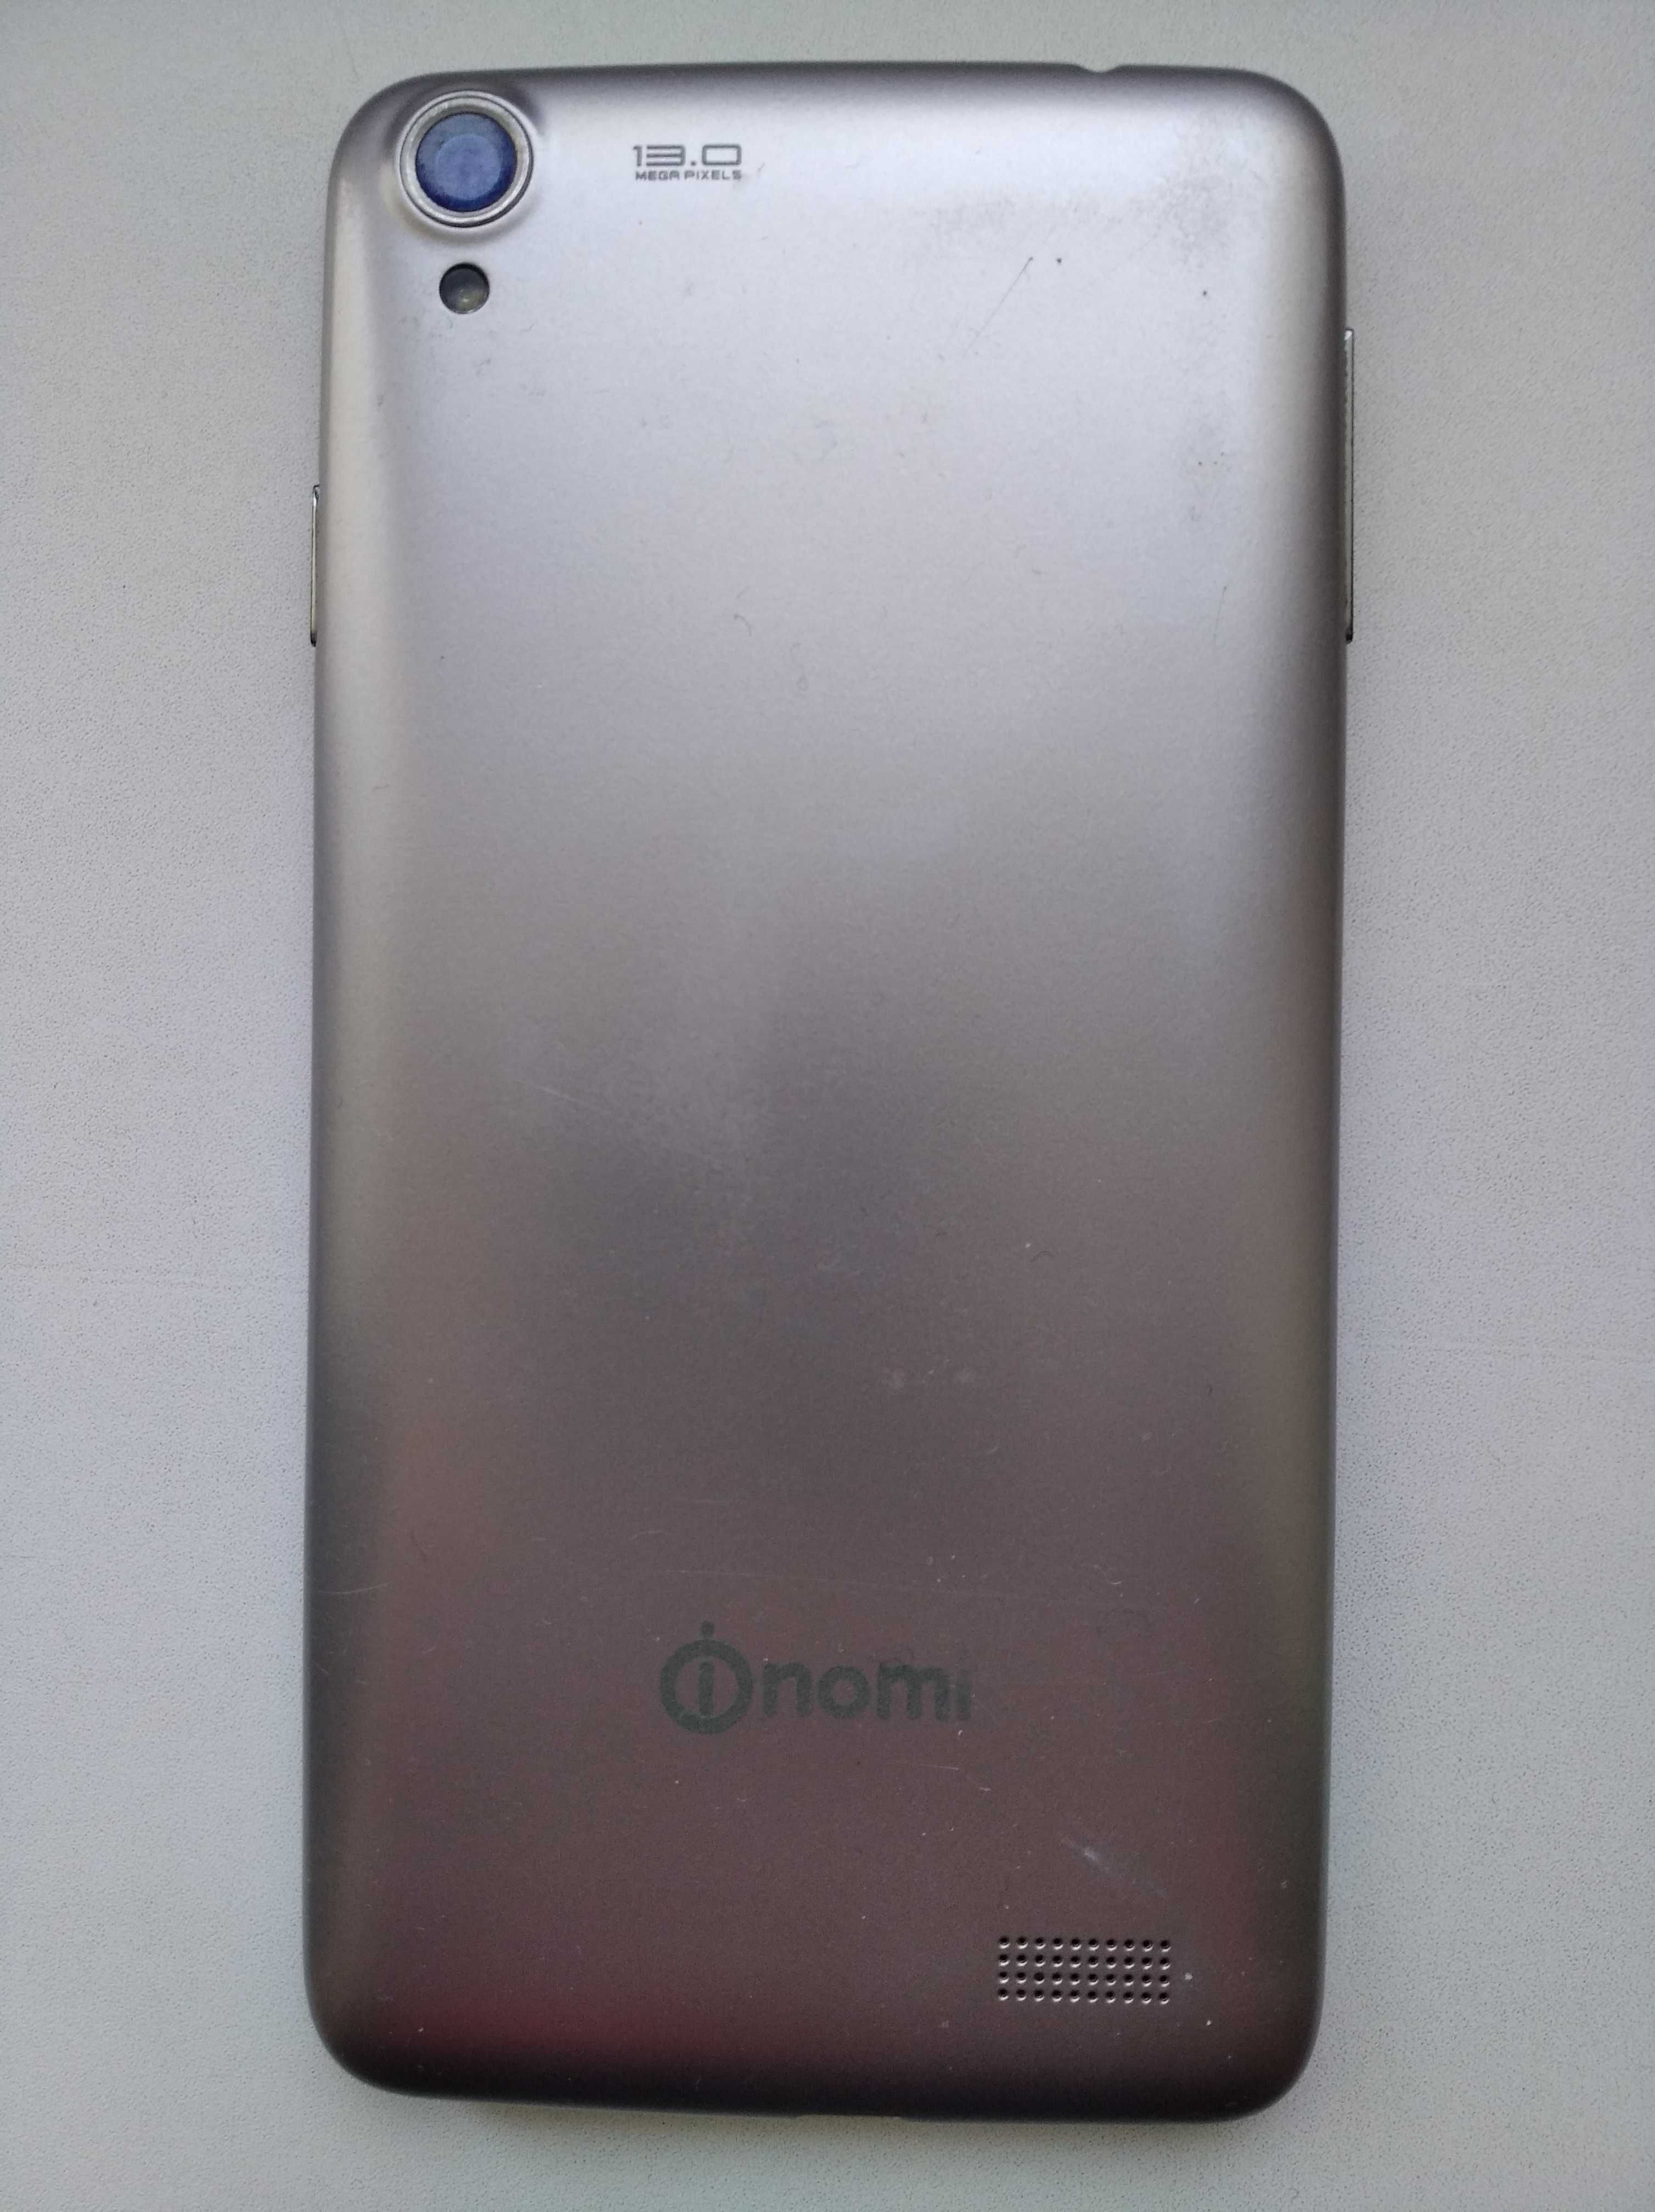 Мобильный телефон смартфон Nomi i505 на 2 SIM-карты